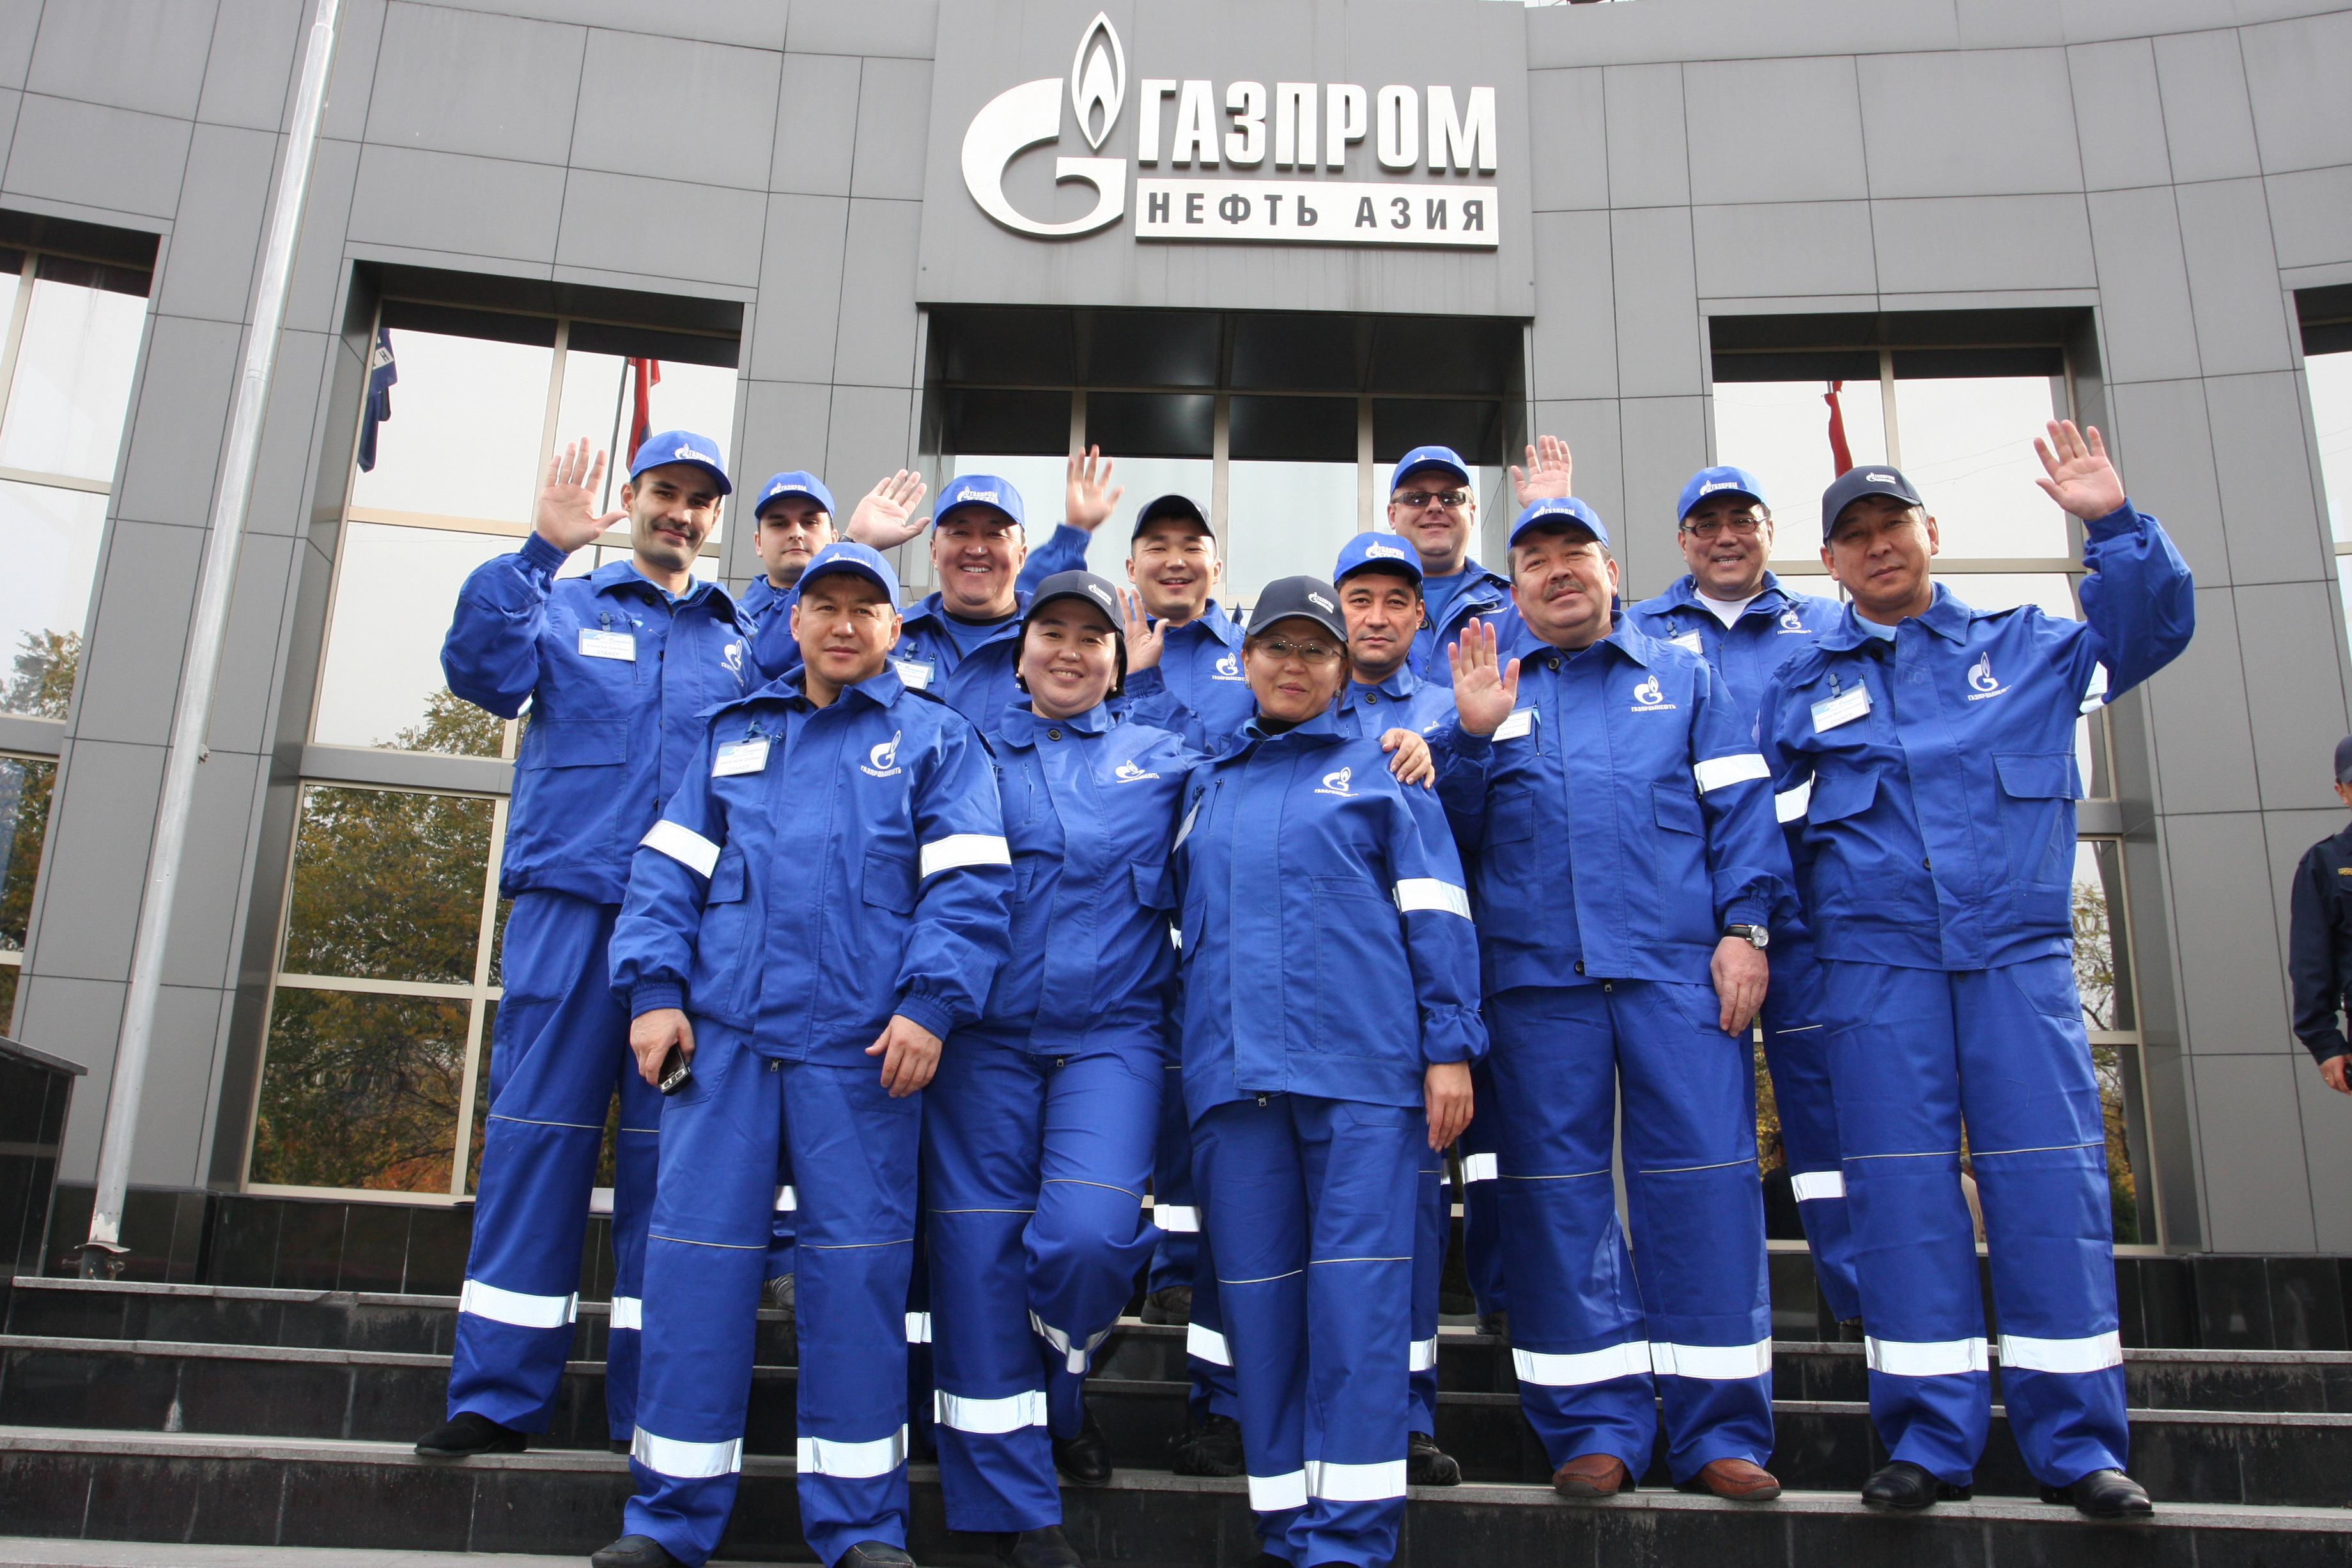 Сотрудники газпрома фото